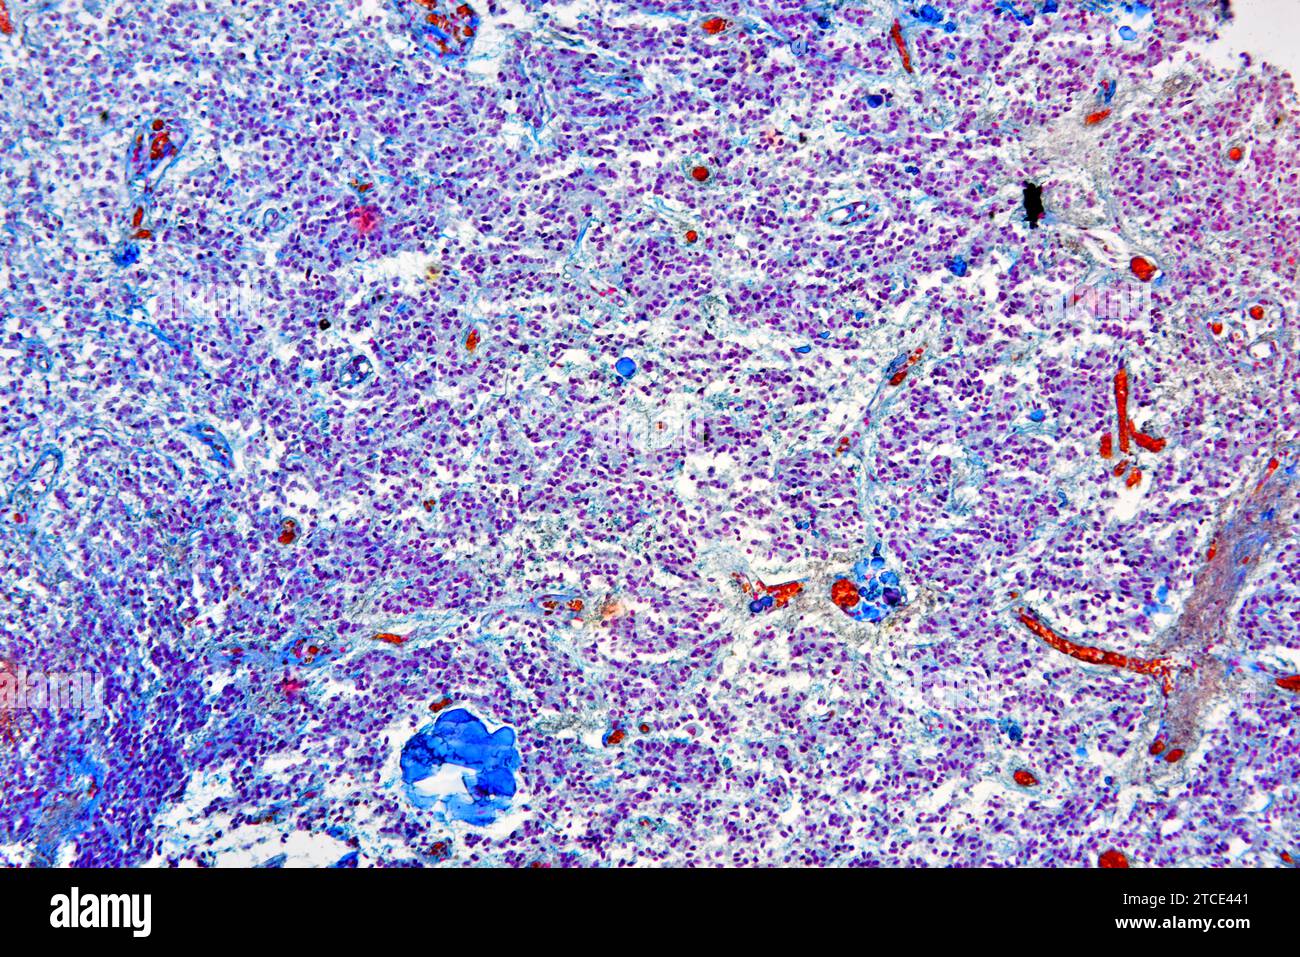 Normale ghiandola pineale che produce melatonina e serotonina. Microscopio ottico X100. Foto Stock